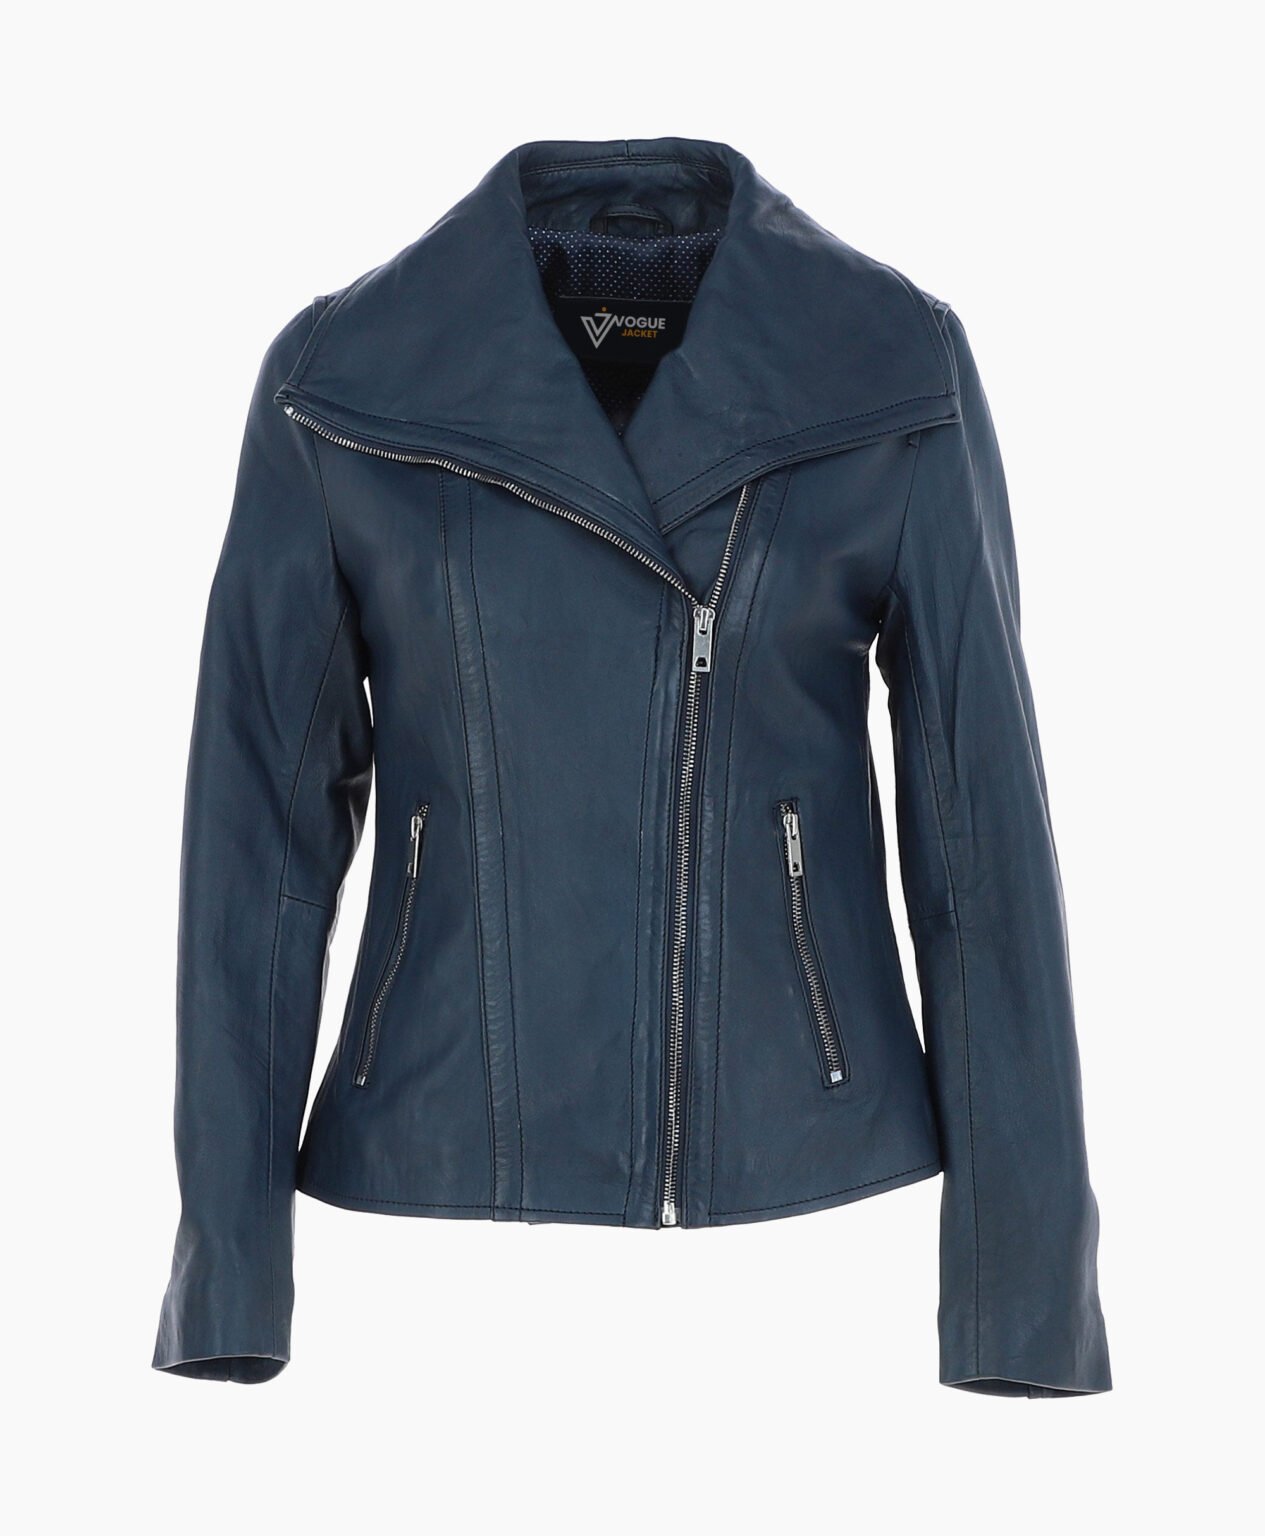 vogue-jacket-leather-jacket-fashion-collar-navy-shelby-image200